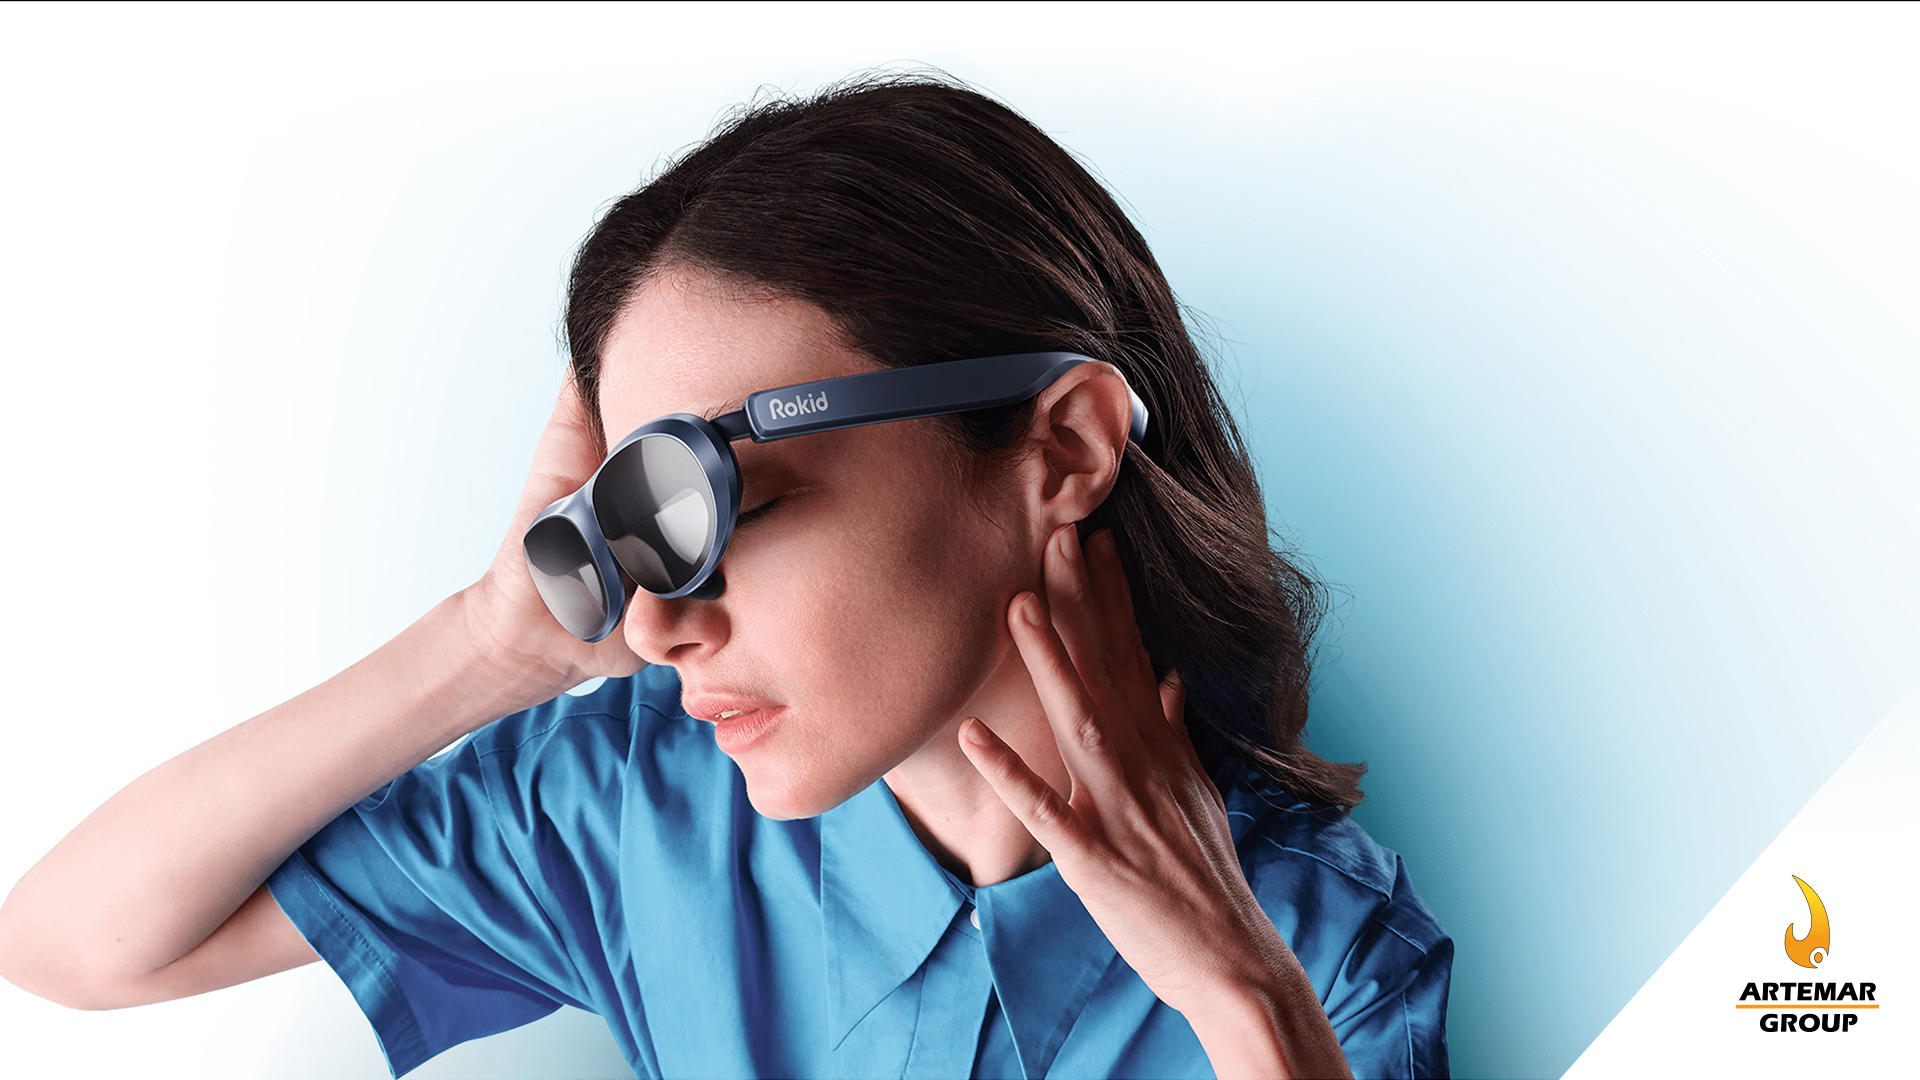 Rokid Max son las nuevas gafas AR para entretenimiento